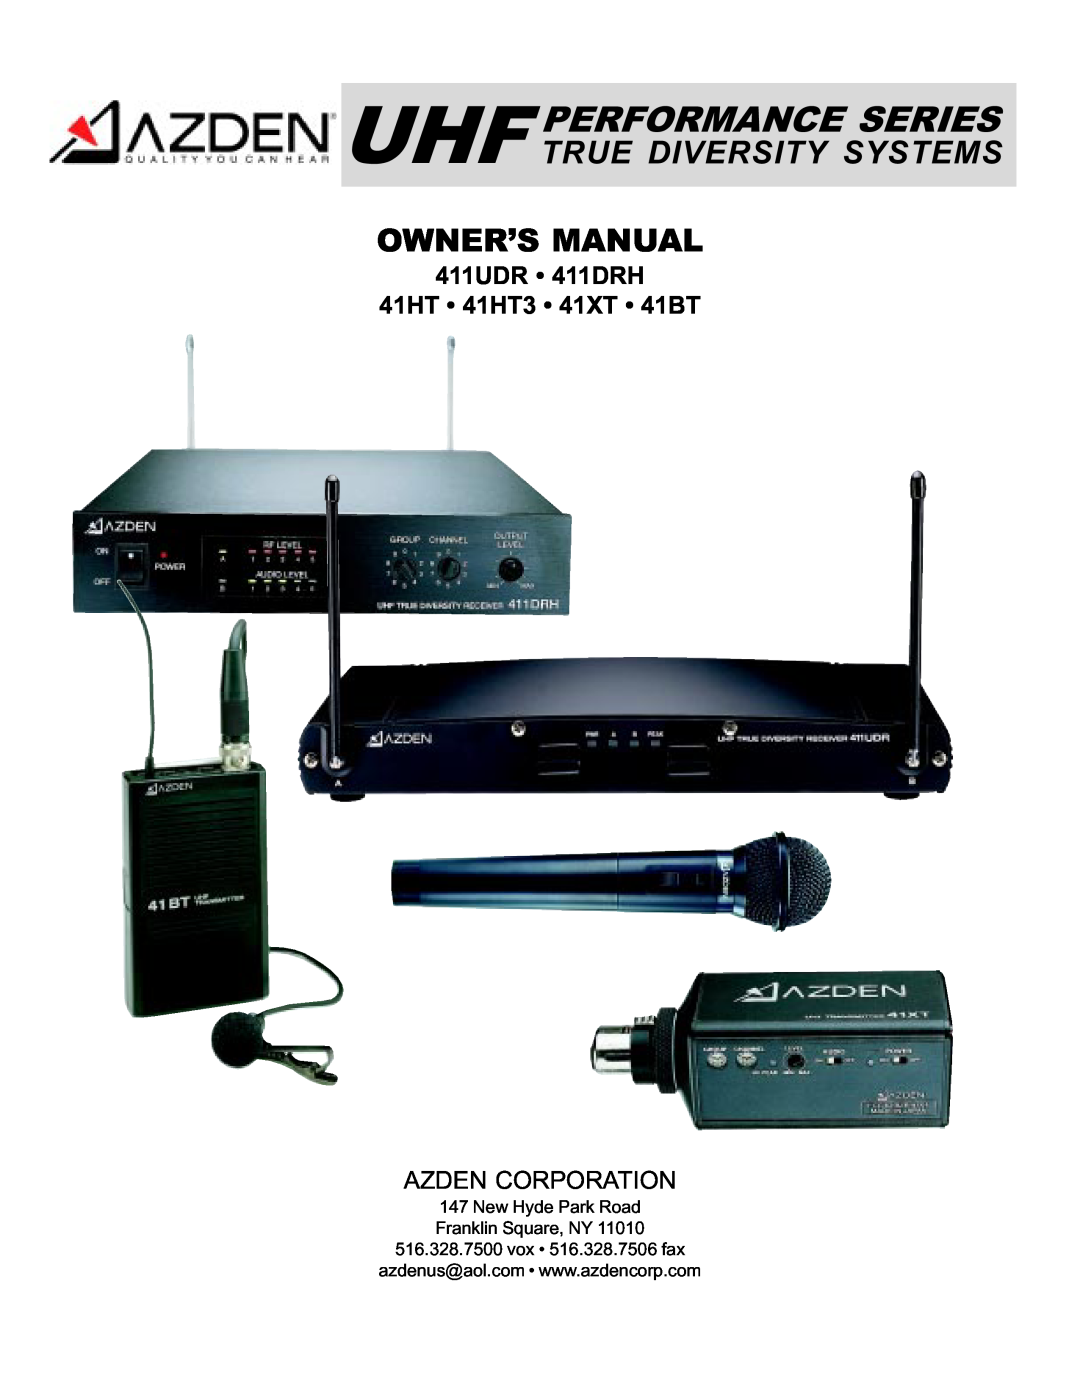 Azden manual Uhf Performance Series True Diversity Systems, 411UDR 411DRH 41HT 41HT3 41XT 41BT, Azden Corporation 